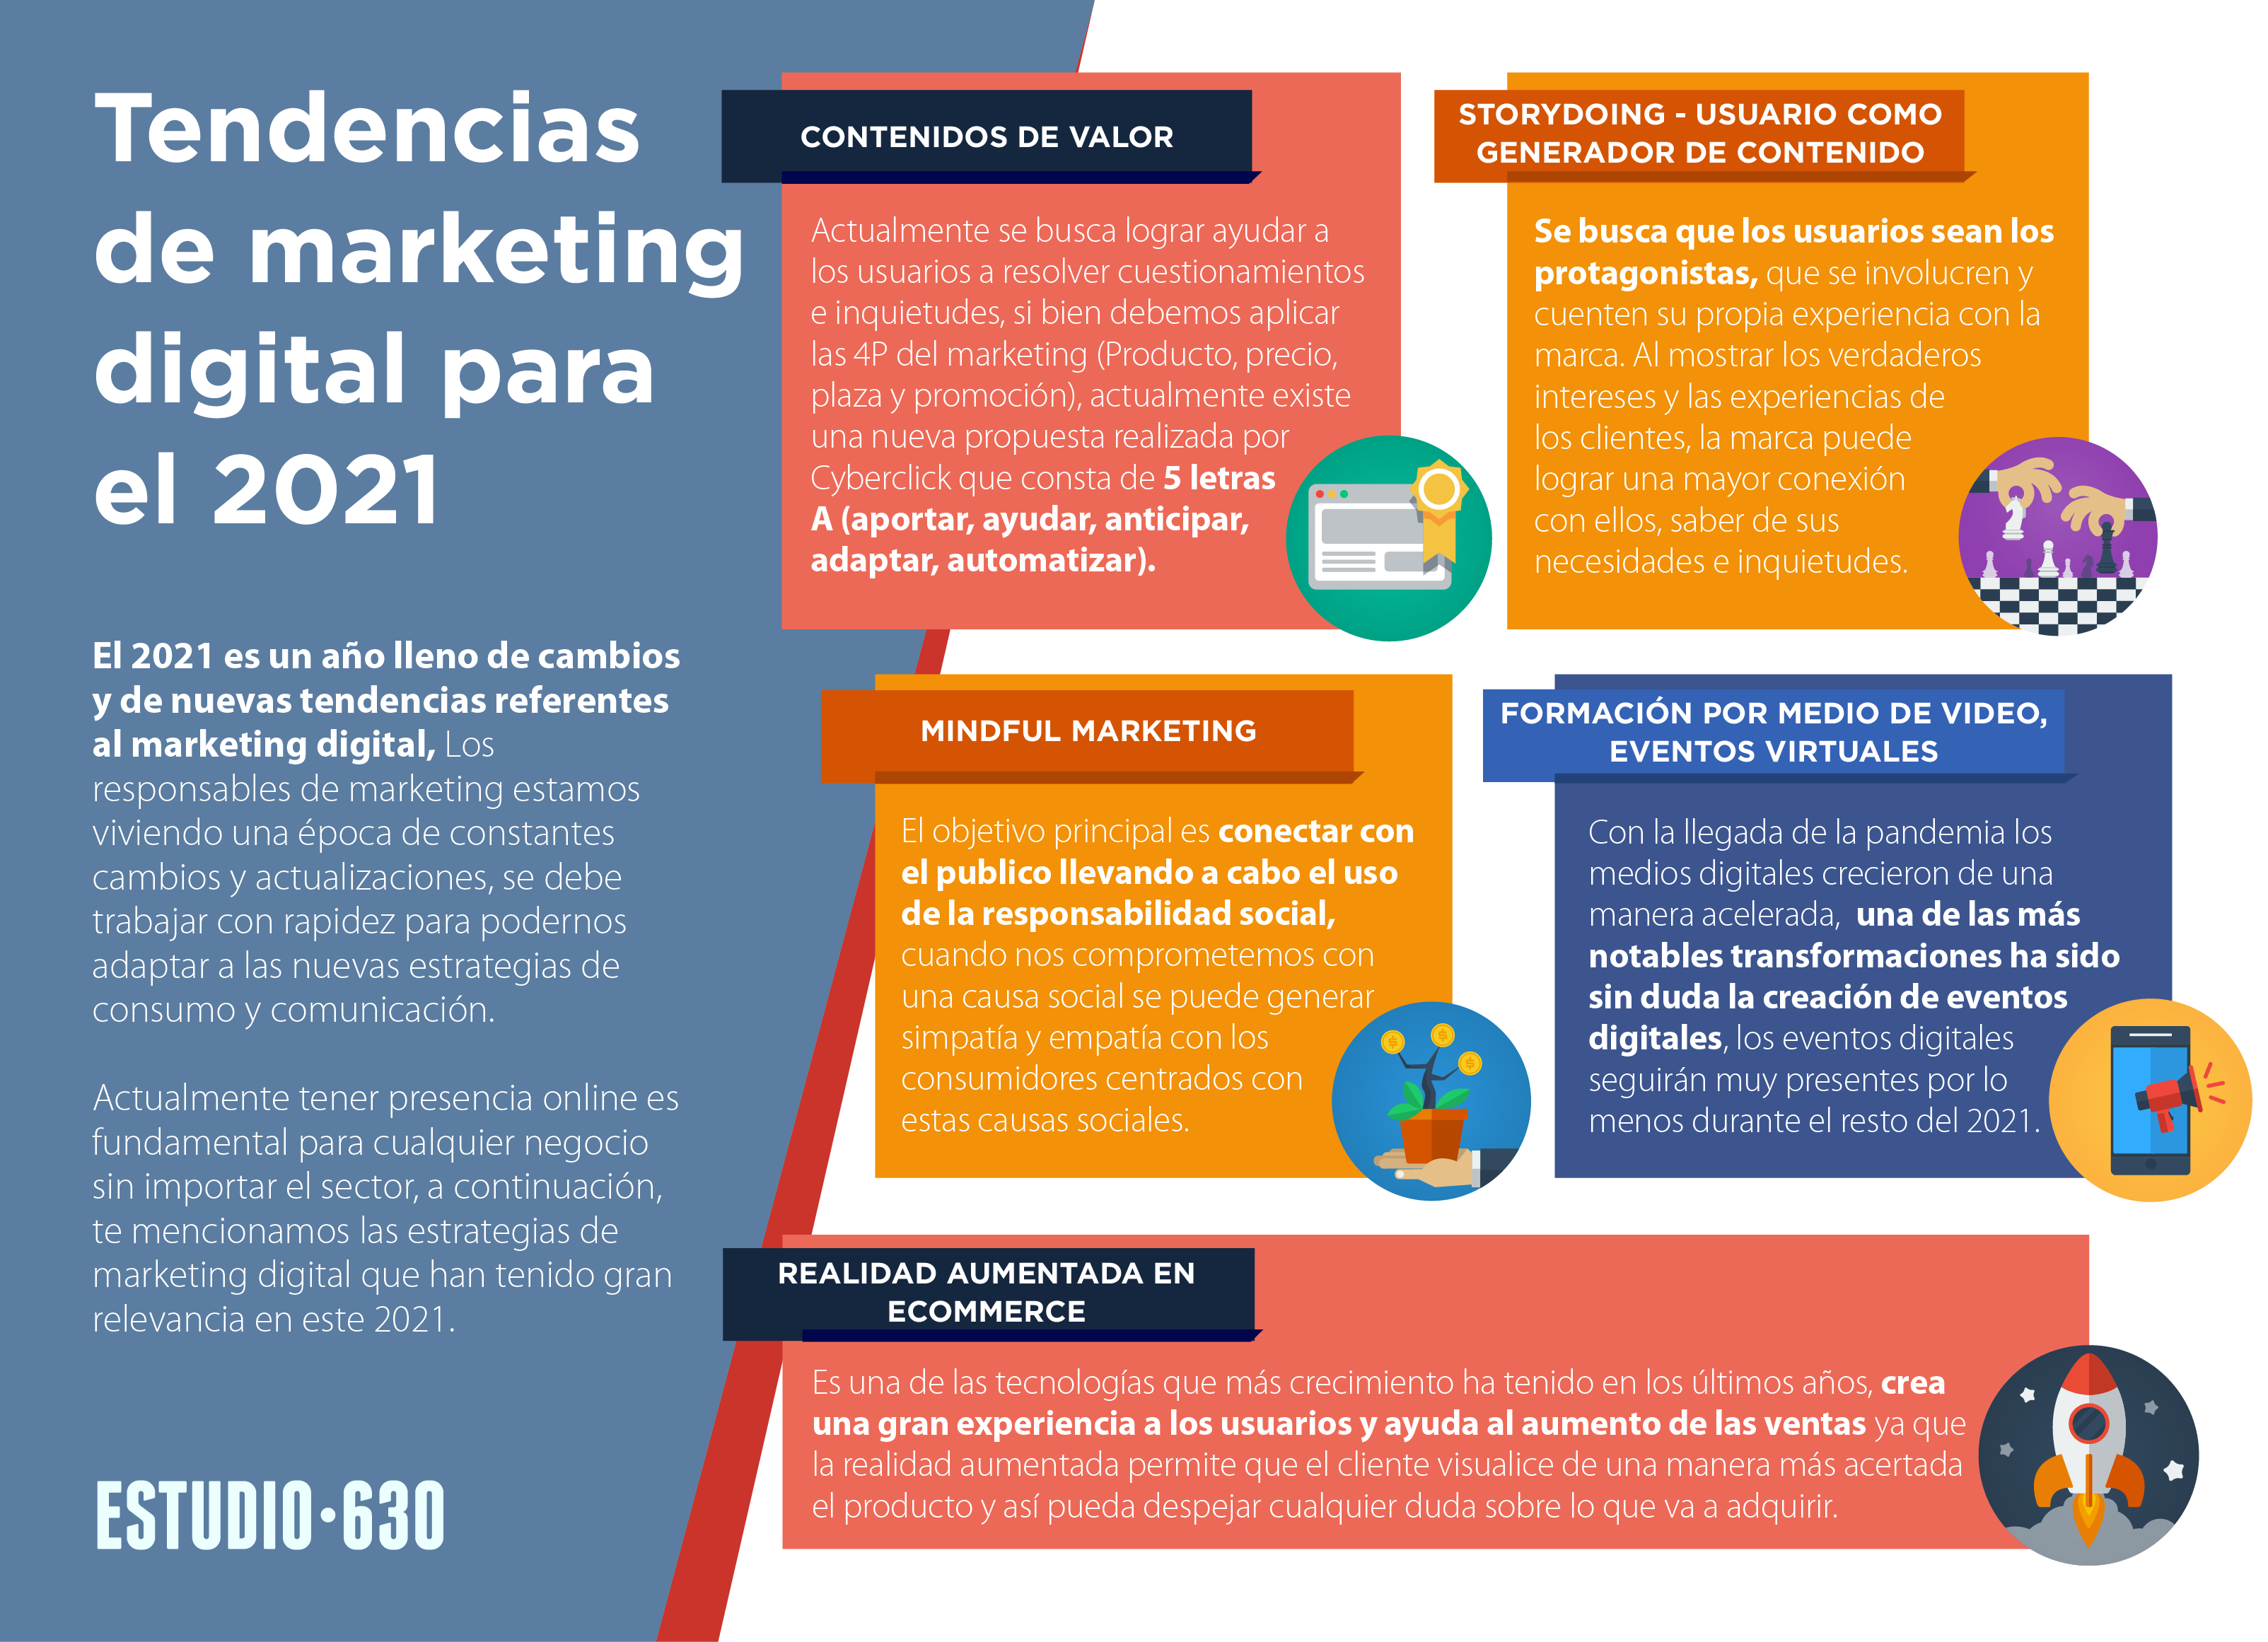 Tendencias de marketing digital 2021 tendencias de marketing digital para el 2021 - Tendencias de Marketing digital para el 2021 - Tendencias de marketing digital para el 2021